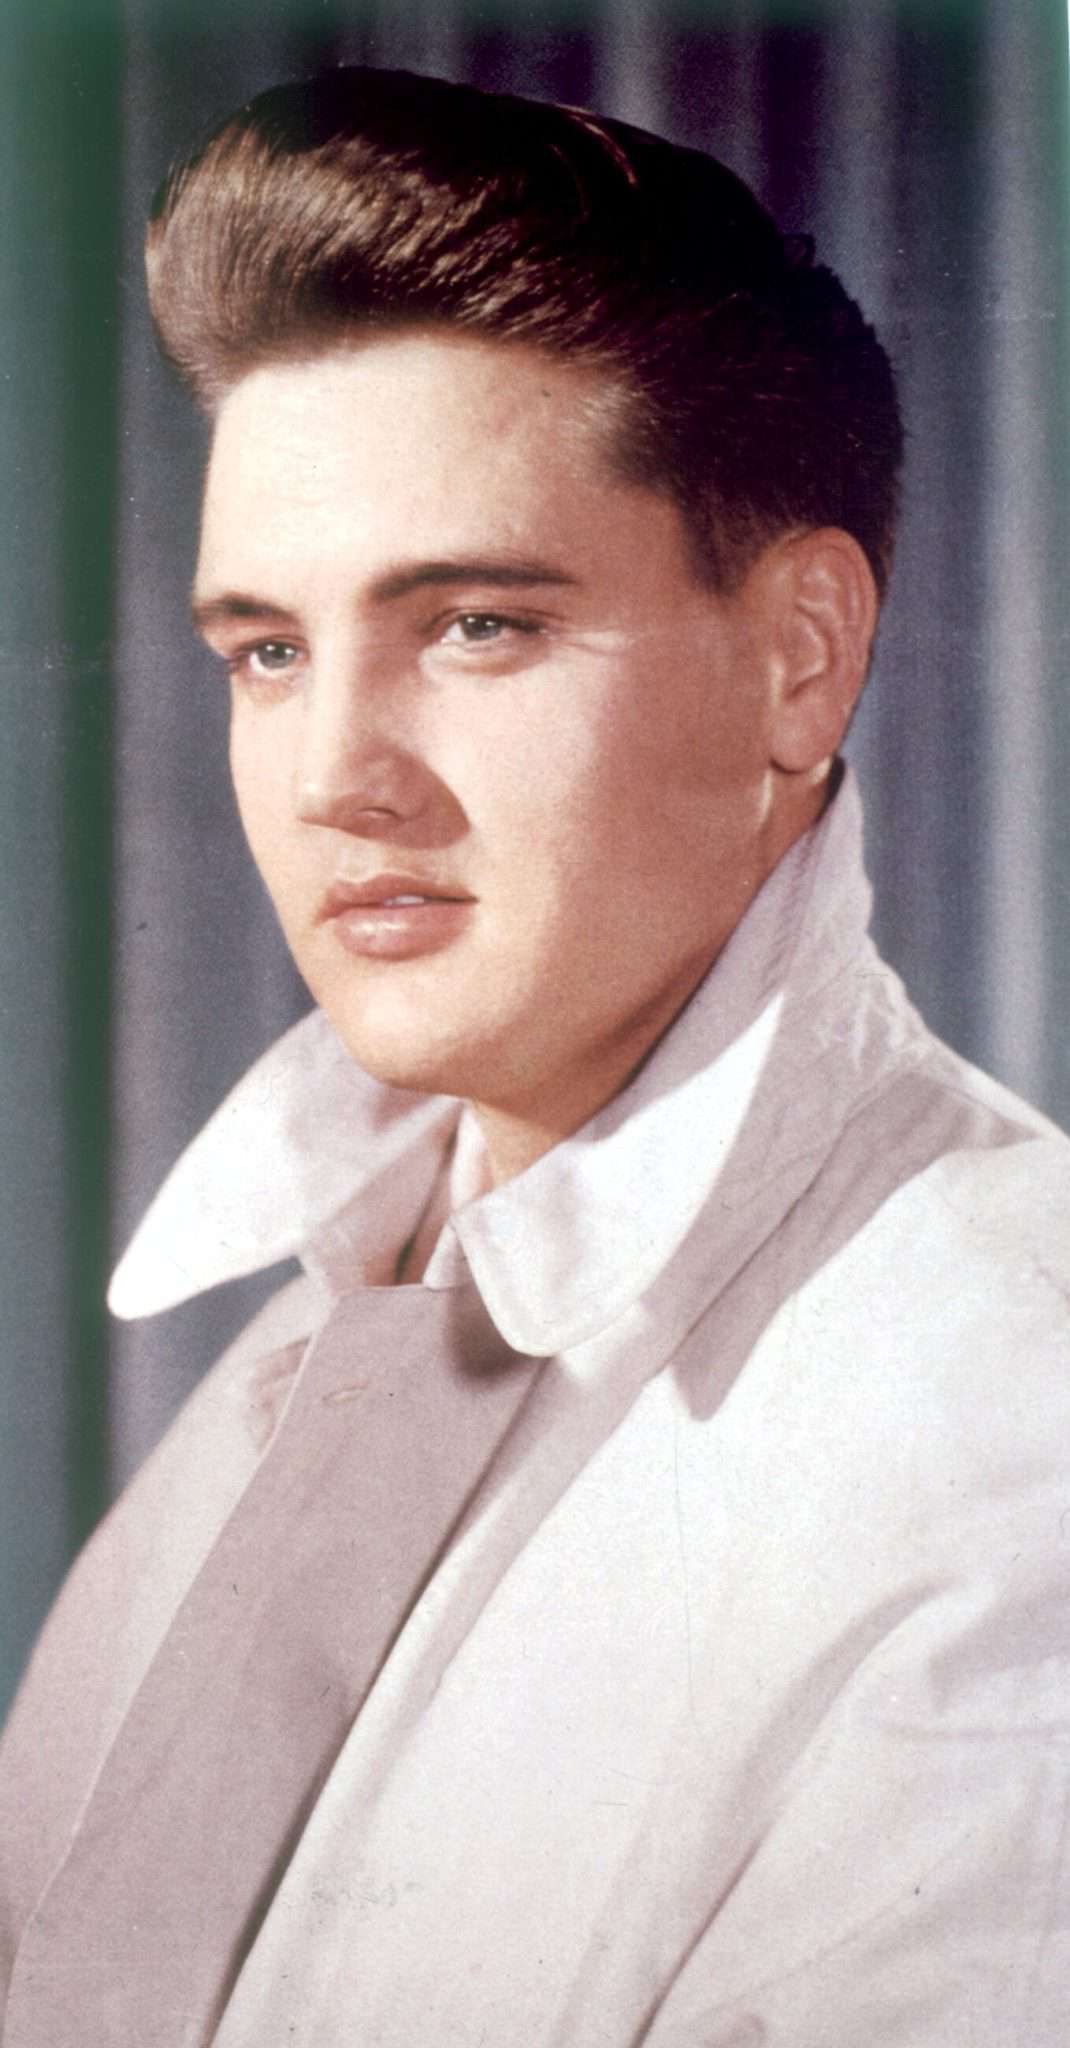 Donald Trump uważa, że wygląda jak Elvis Presley